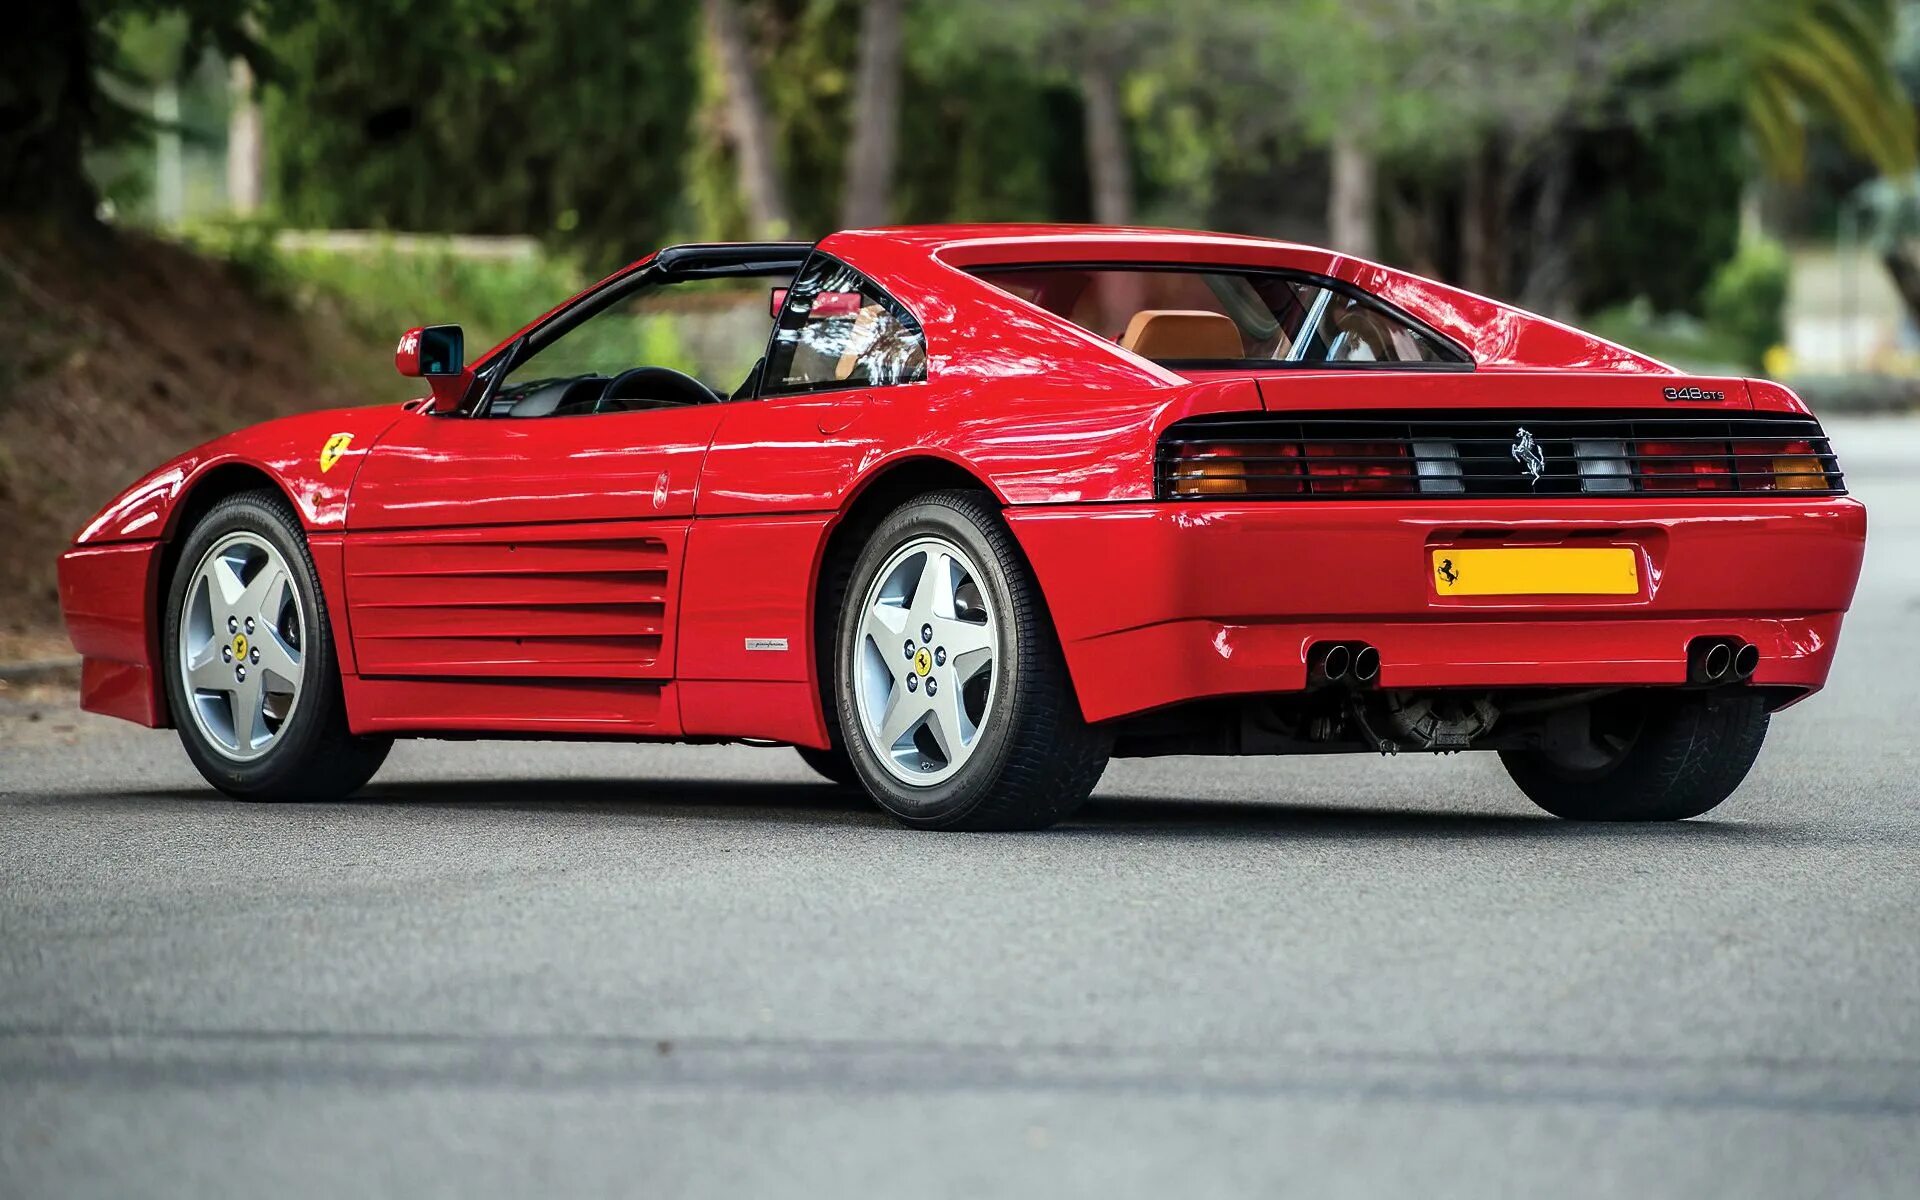 Ferrari 348. Ferrari 348 GTB. Ferrari 348 GTS. Ferrari 348 GTB 1993. Ferrari Ferrari 348.